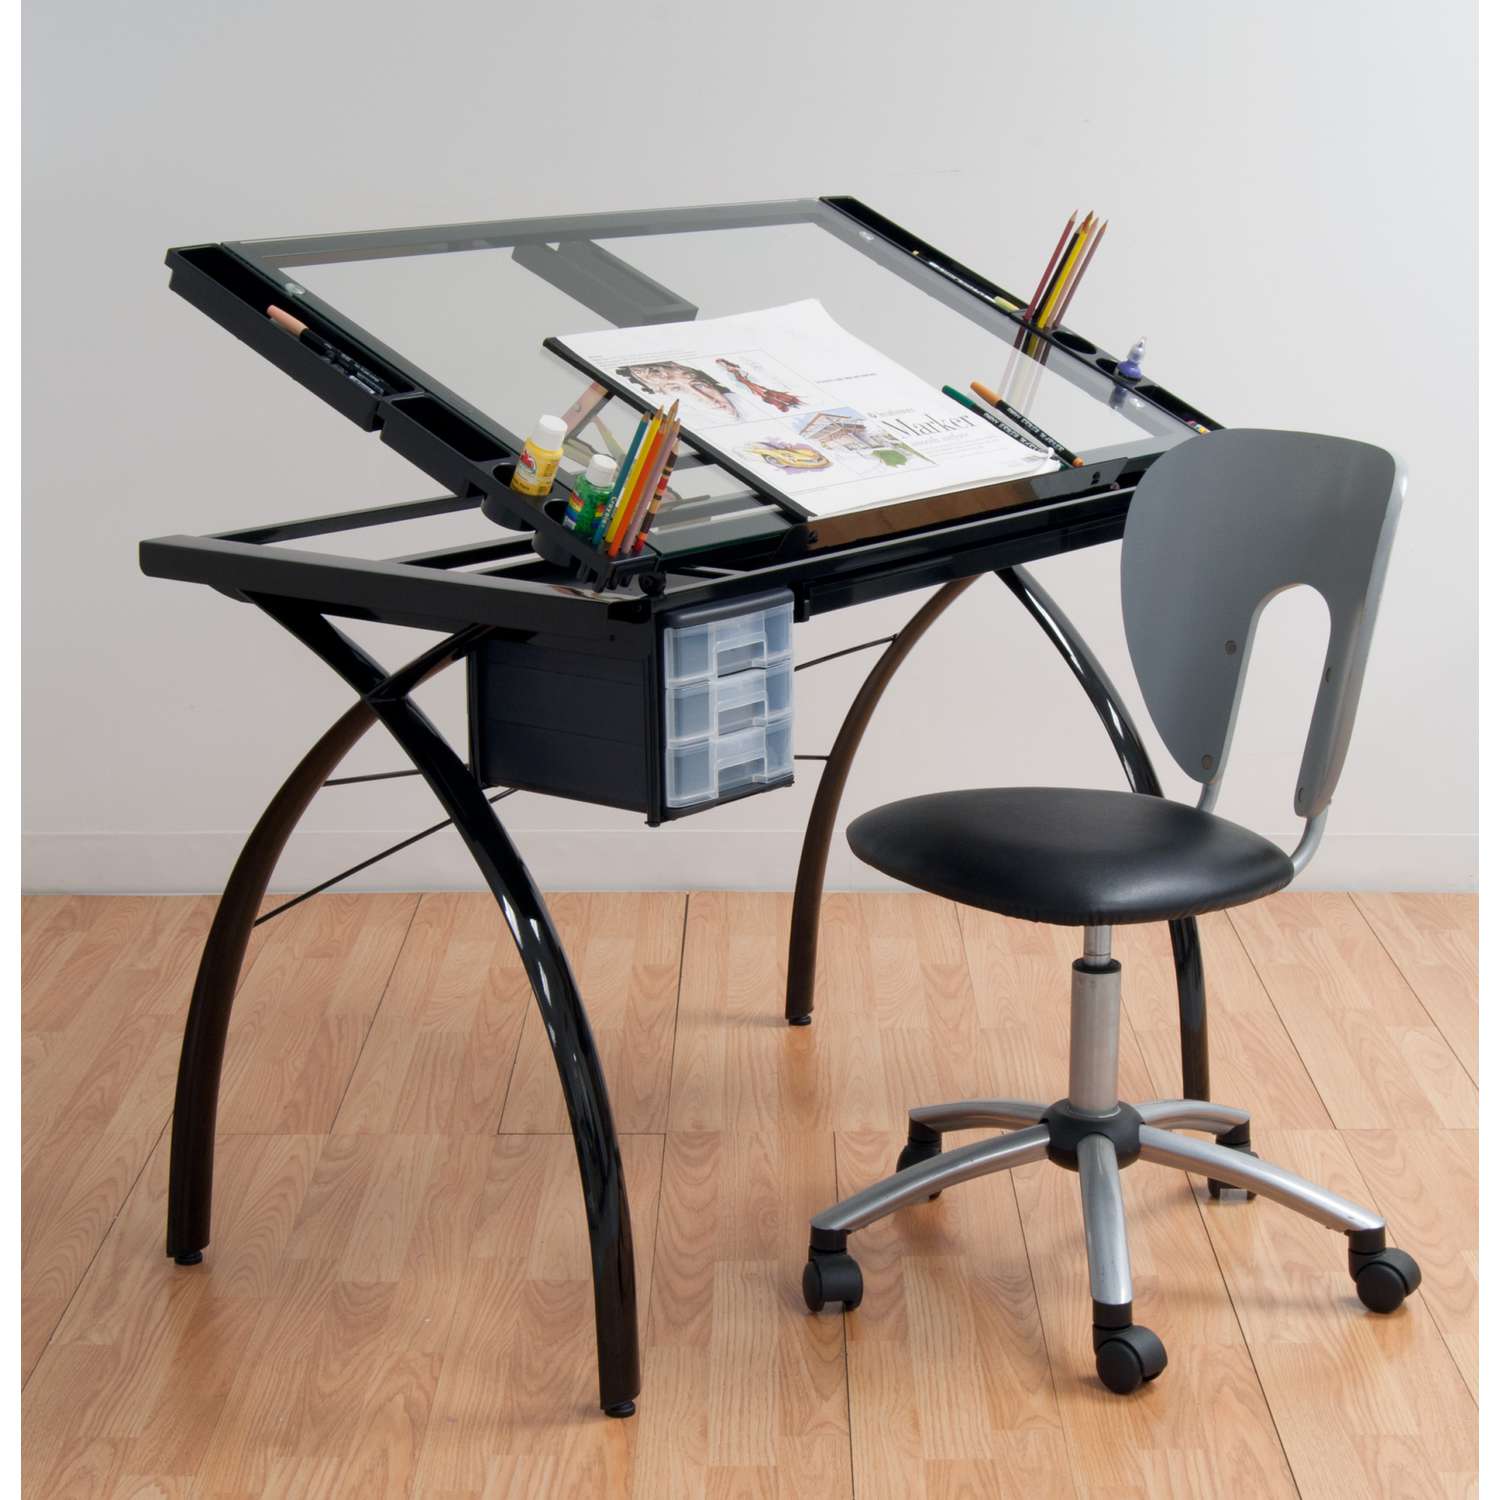 Une table à dessin …  Table à dessin, Bureau dessin, Aménagement